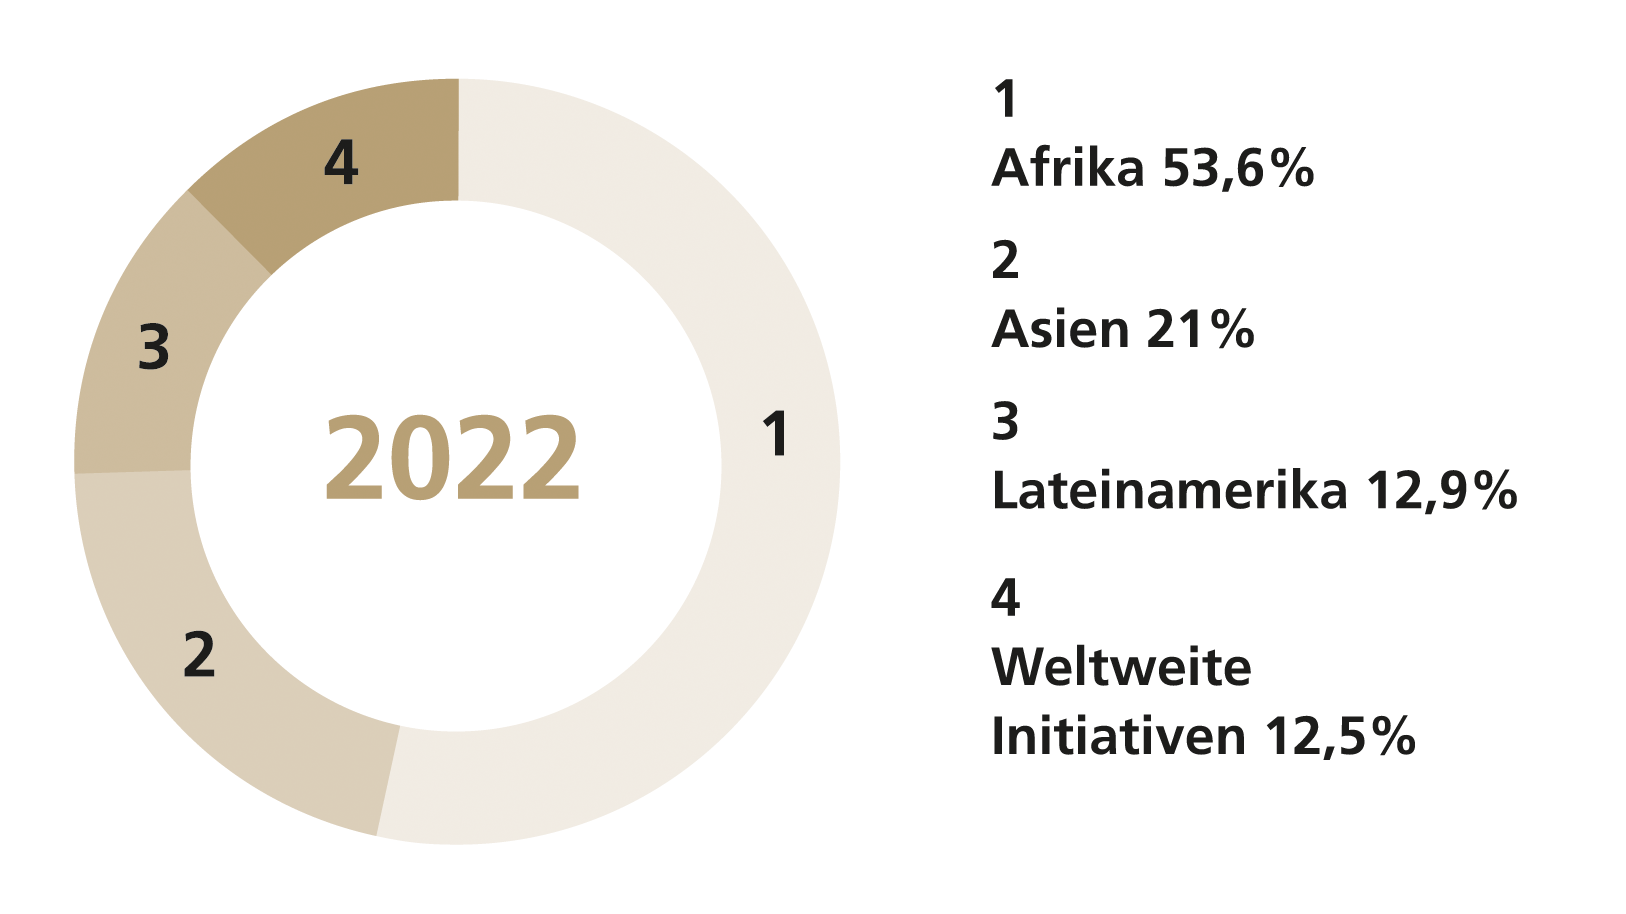 Die Grafik zeigt, wie die CBM die Mittel auf die Kontinente aufteilt: 53% in Afrika, 21% in Asien, 11.9% in Lateinamerika und 12,5% in weltweite Initativen. 